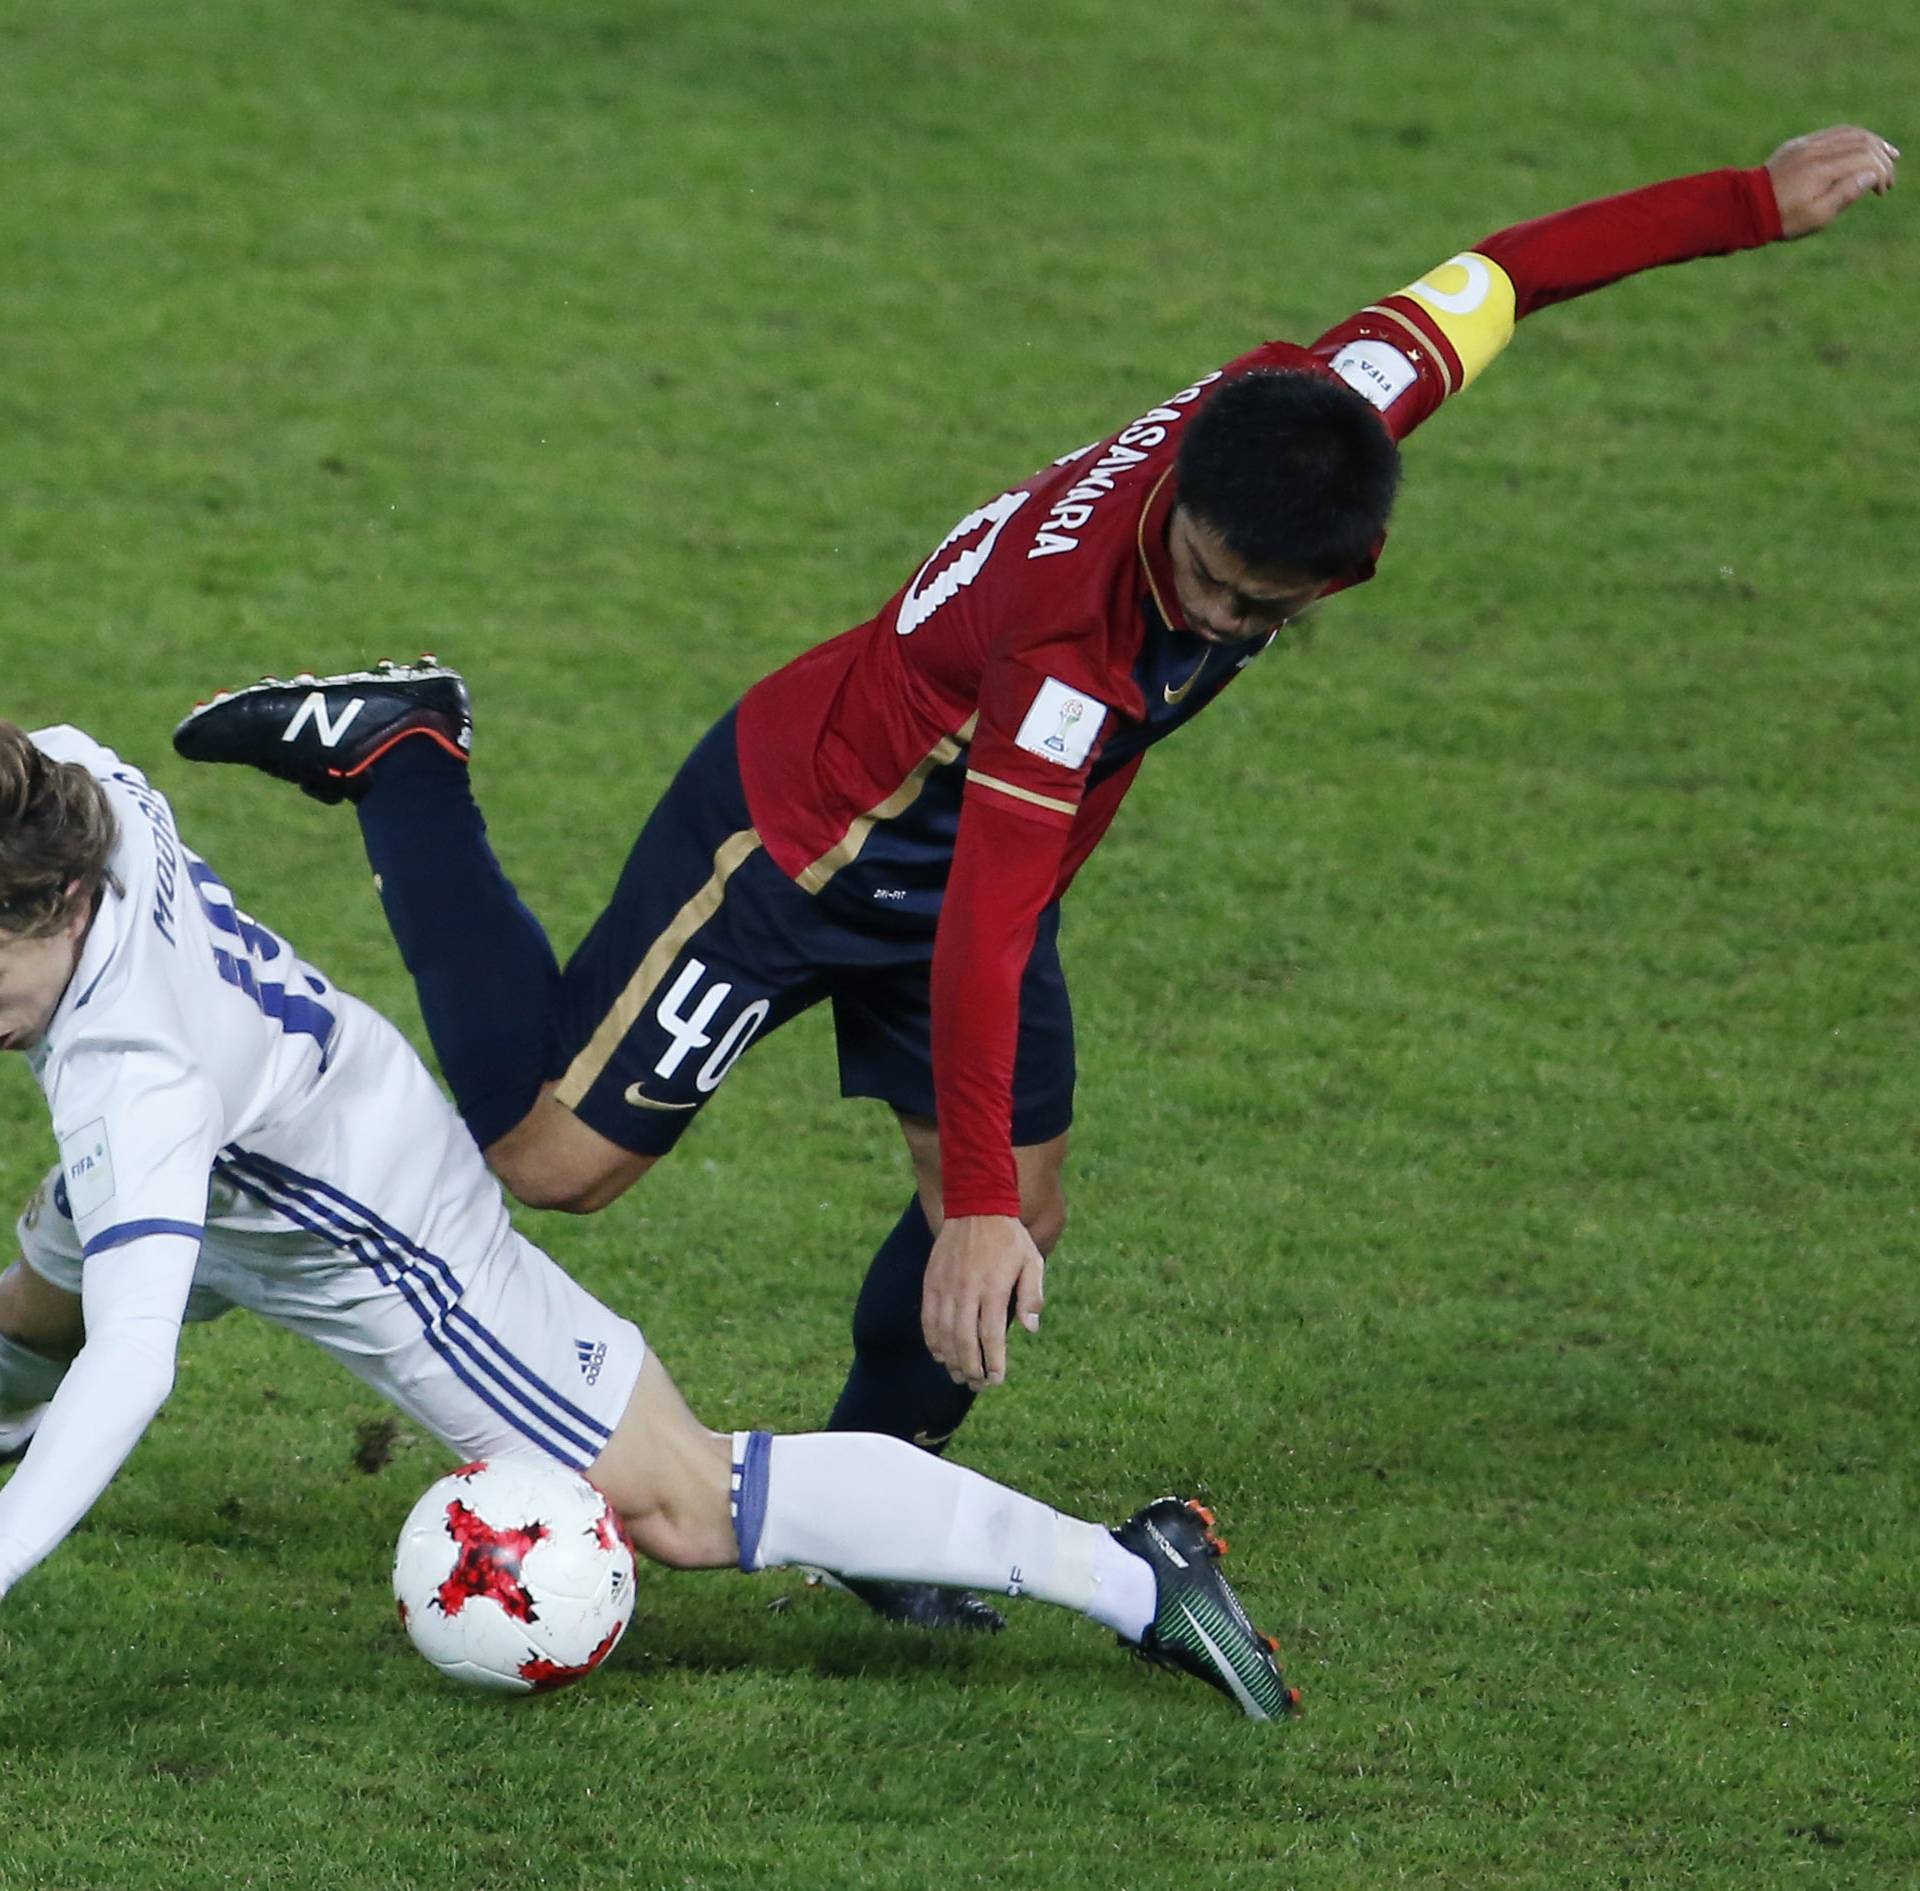 Real Madrid's Luka Modric in action against Kashima Antlers Mitsuo Ogasawara